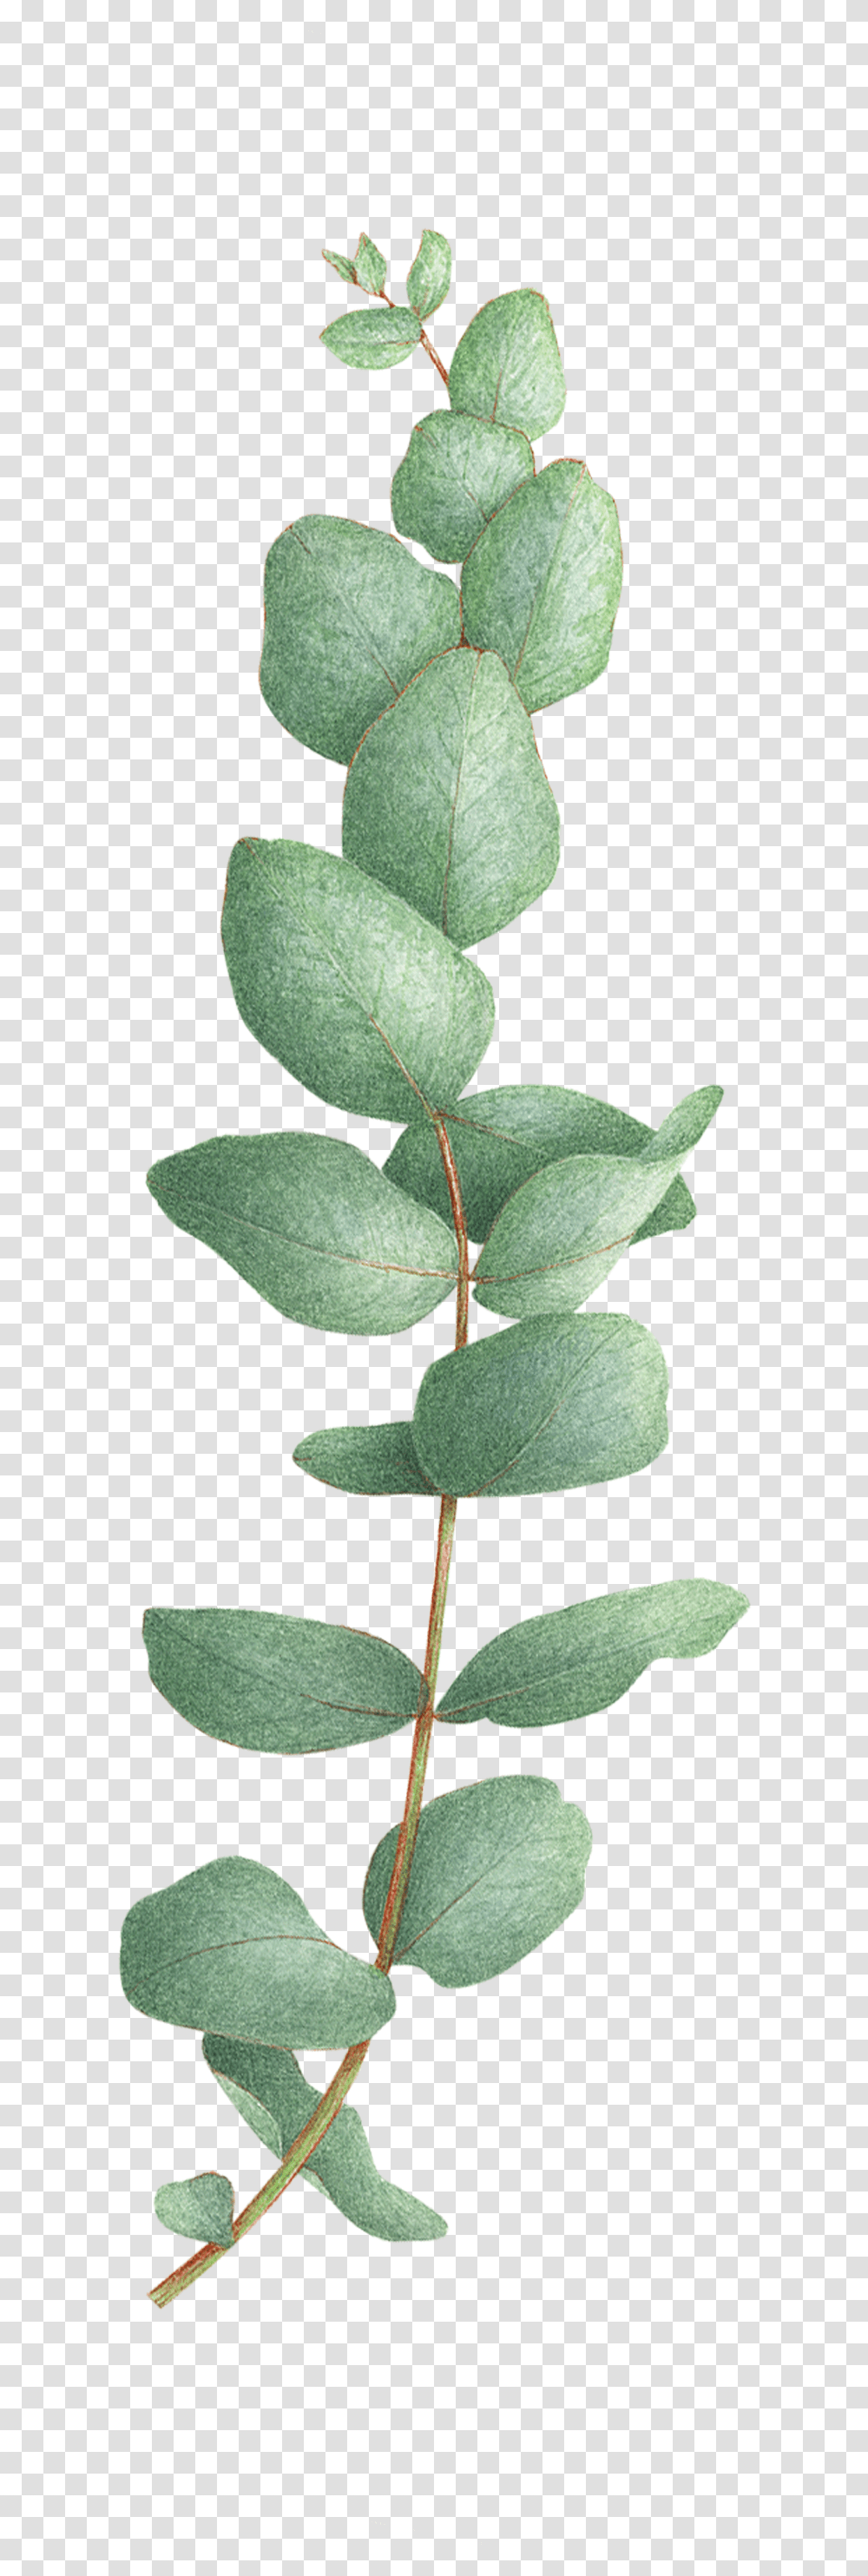 Eucalyptus Tree Eucalyptus Tattoo, Leaf, Plant, Flower, Blossom Transparent Png – Pngset.com